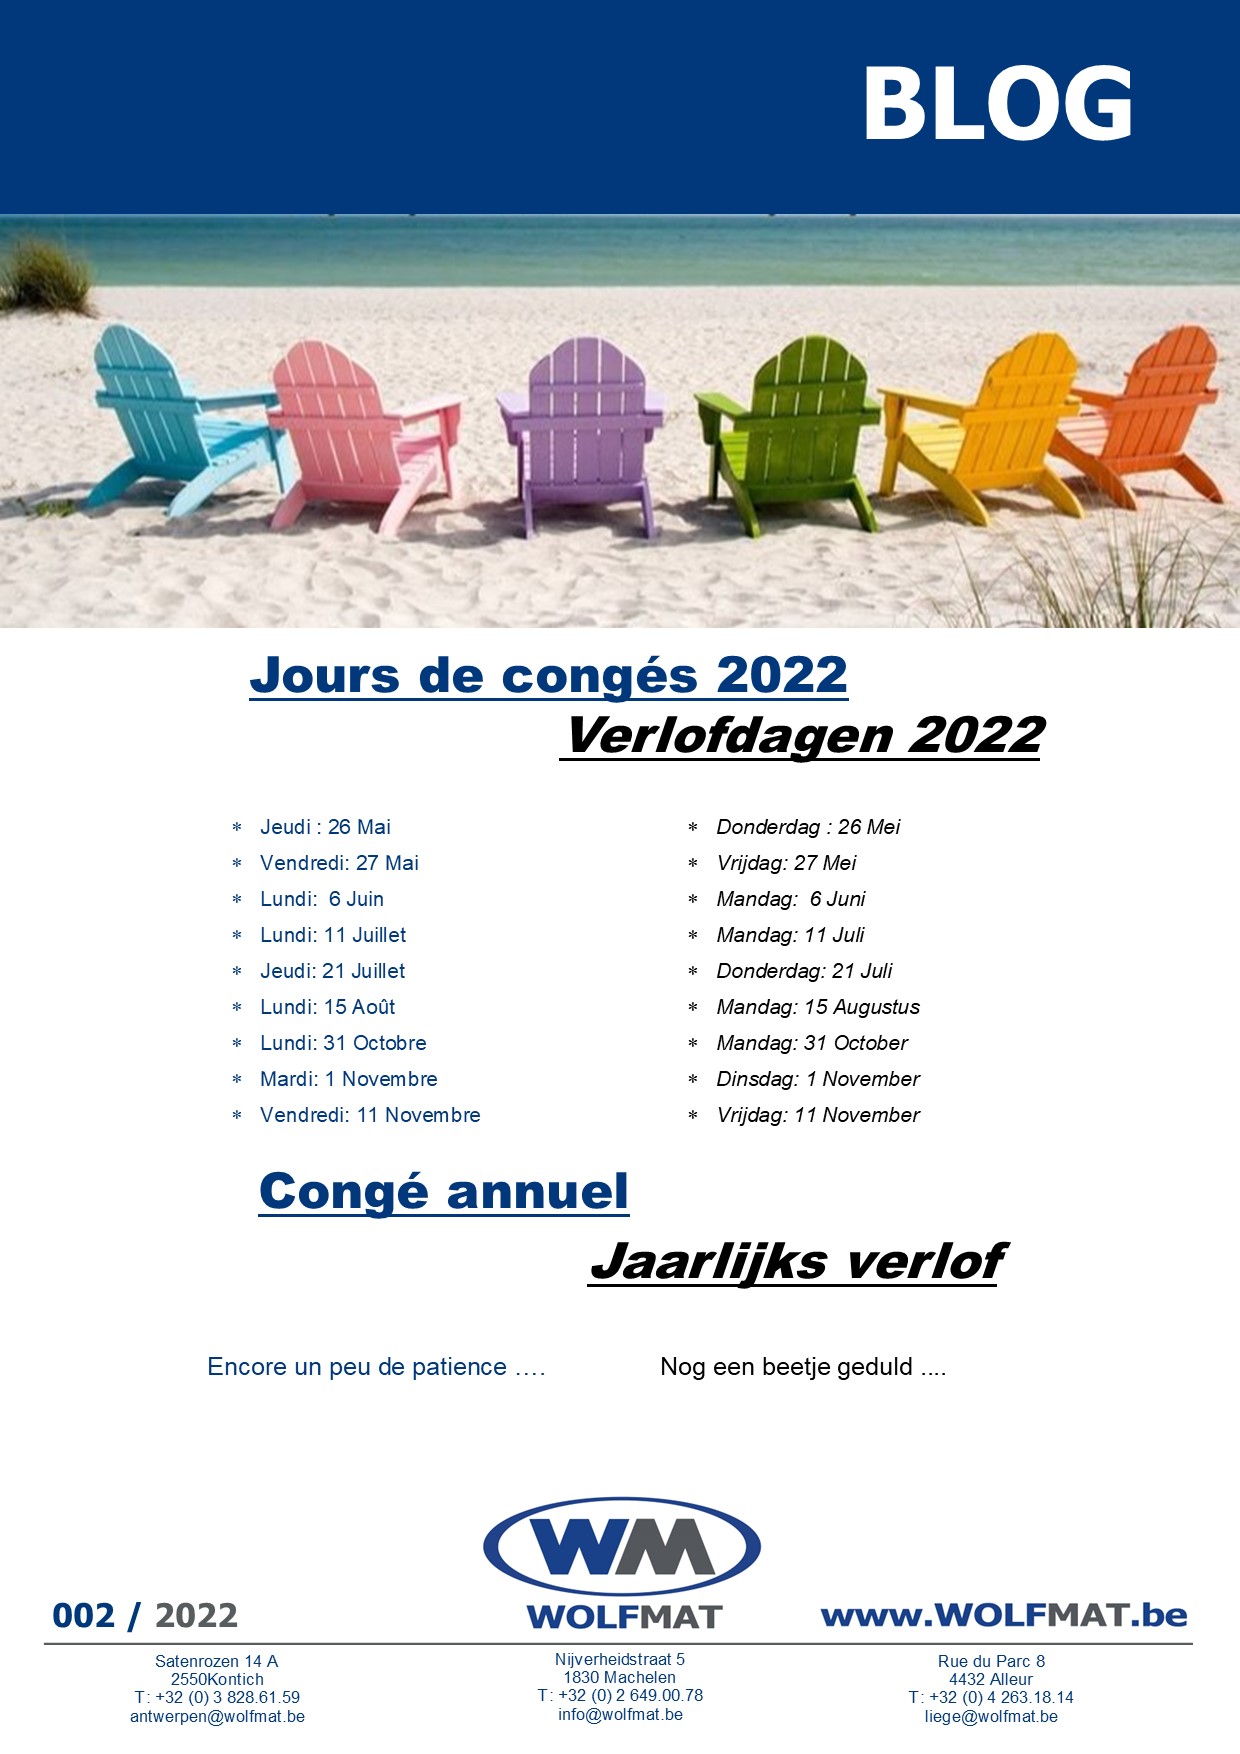 Jours de congés 2022 - Verlofdagen 2022